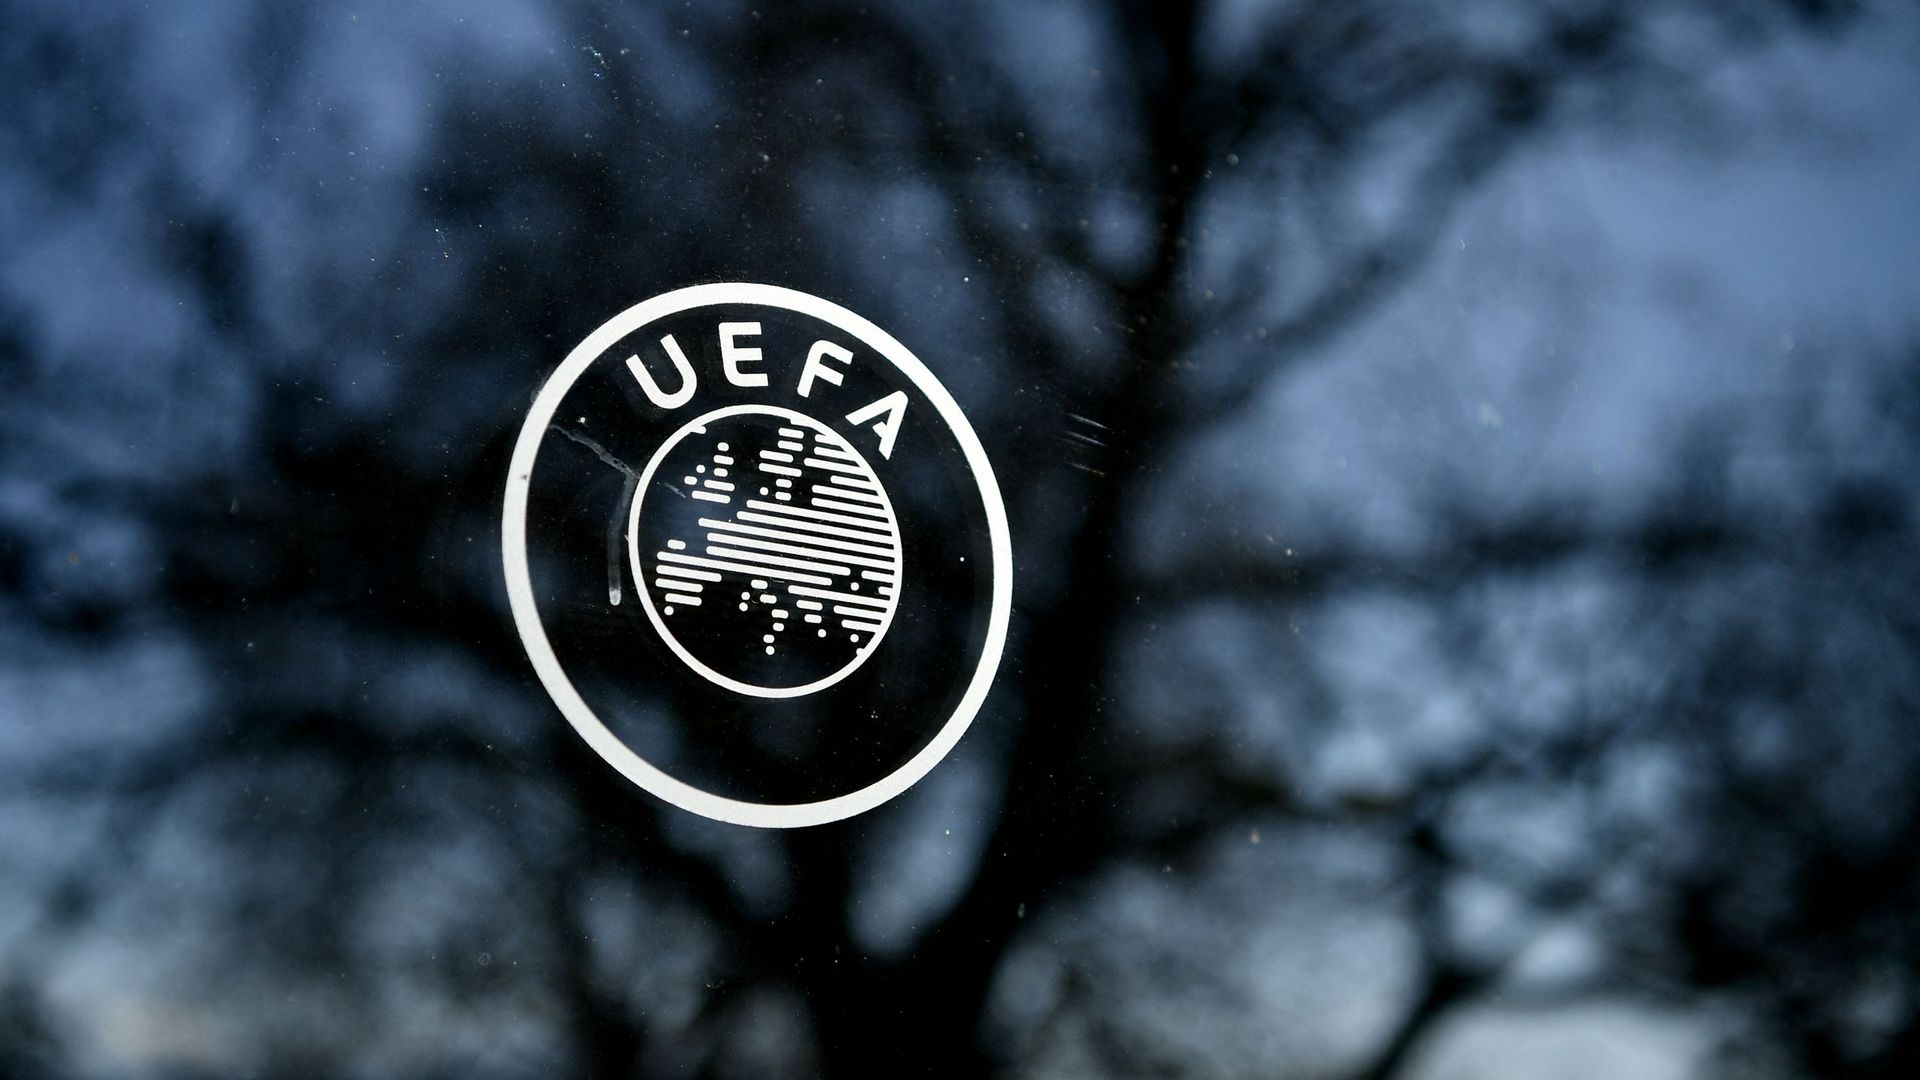 Logo UEFA.